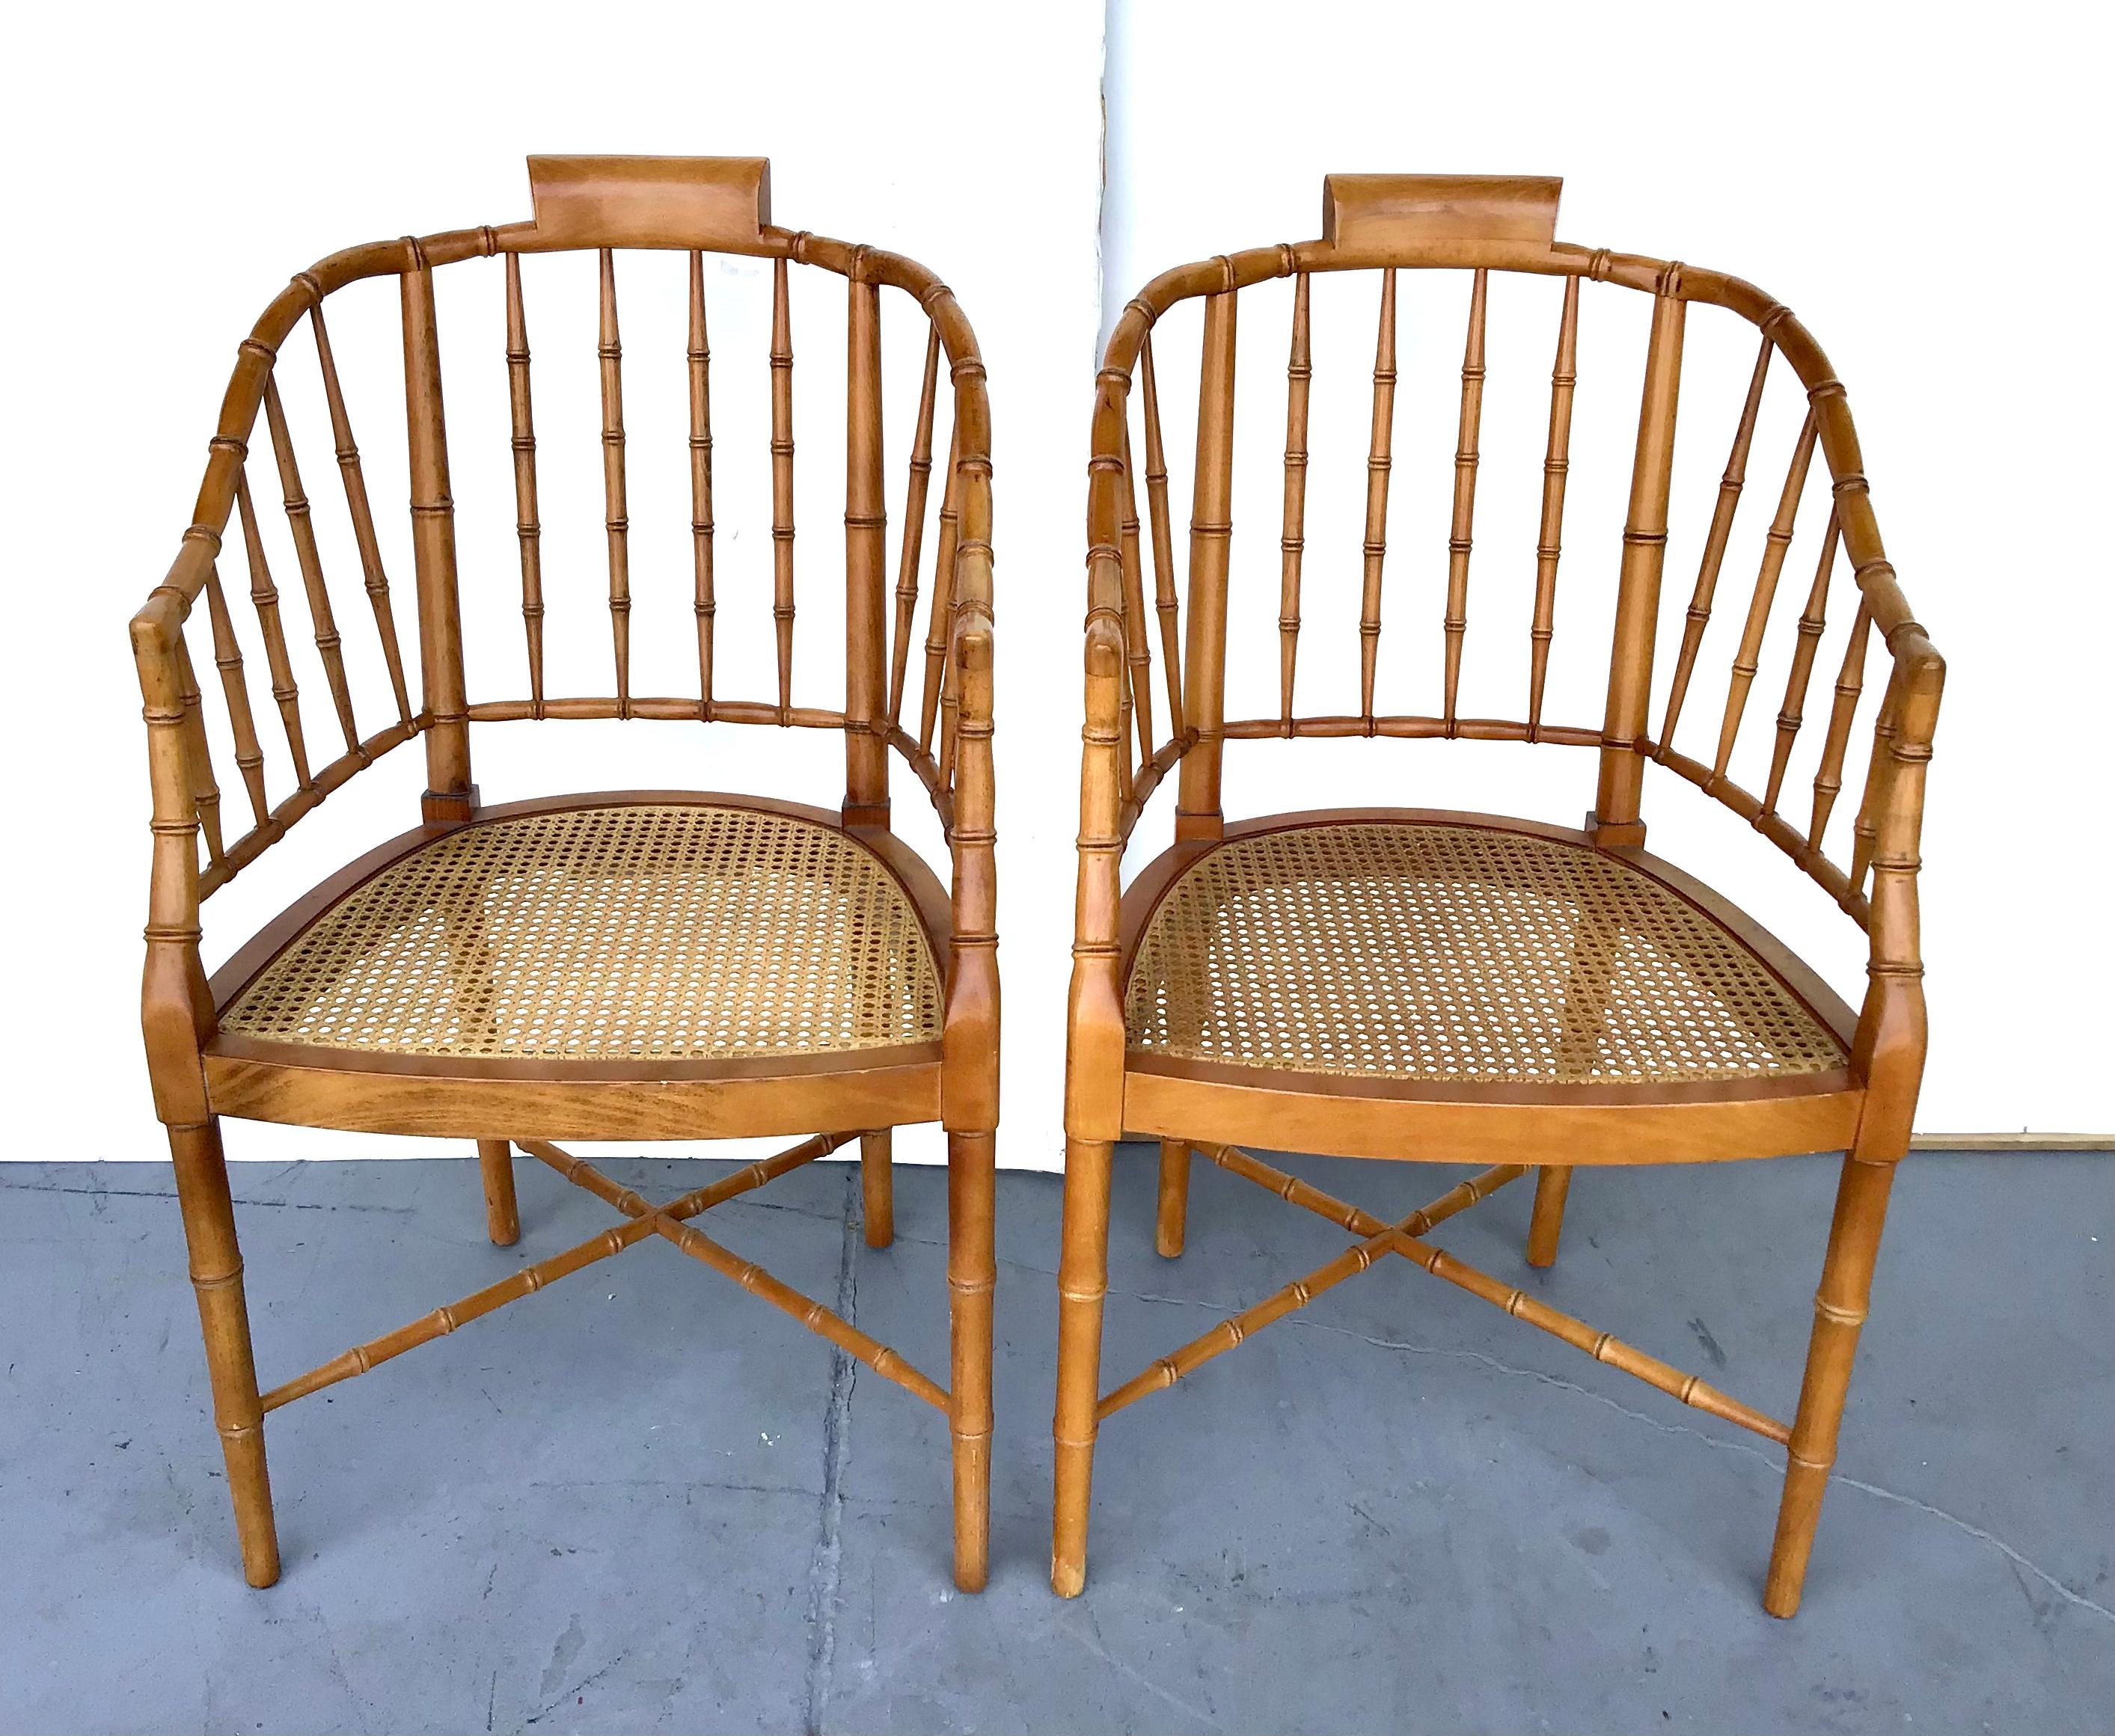 Paire de fauteuils baignoires en faux bambou de Stickley Furniture. Fabriquée en faux-bambou, cette paire de chaises américaines présente un dossier en forme de baignoire et des accoudoirs incurvés reposant sur une assise en rotin. Chaque chaise